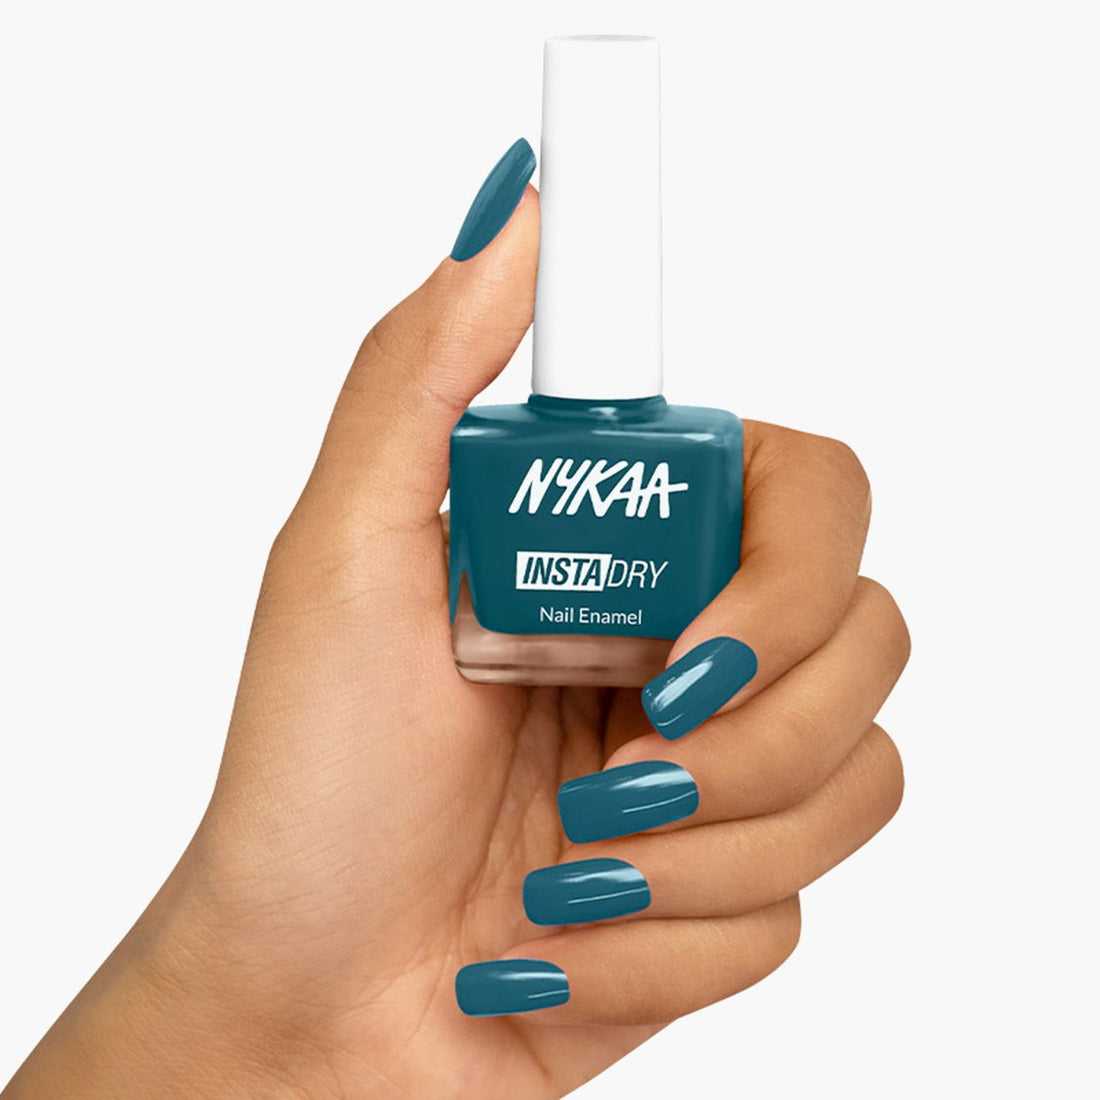 Nykaa Breathable Nail Enamel - Minty Fresh - 329 (9ml) | eBay